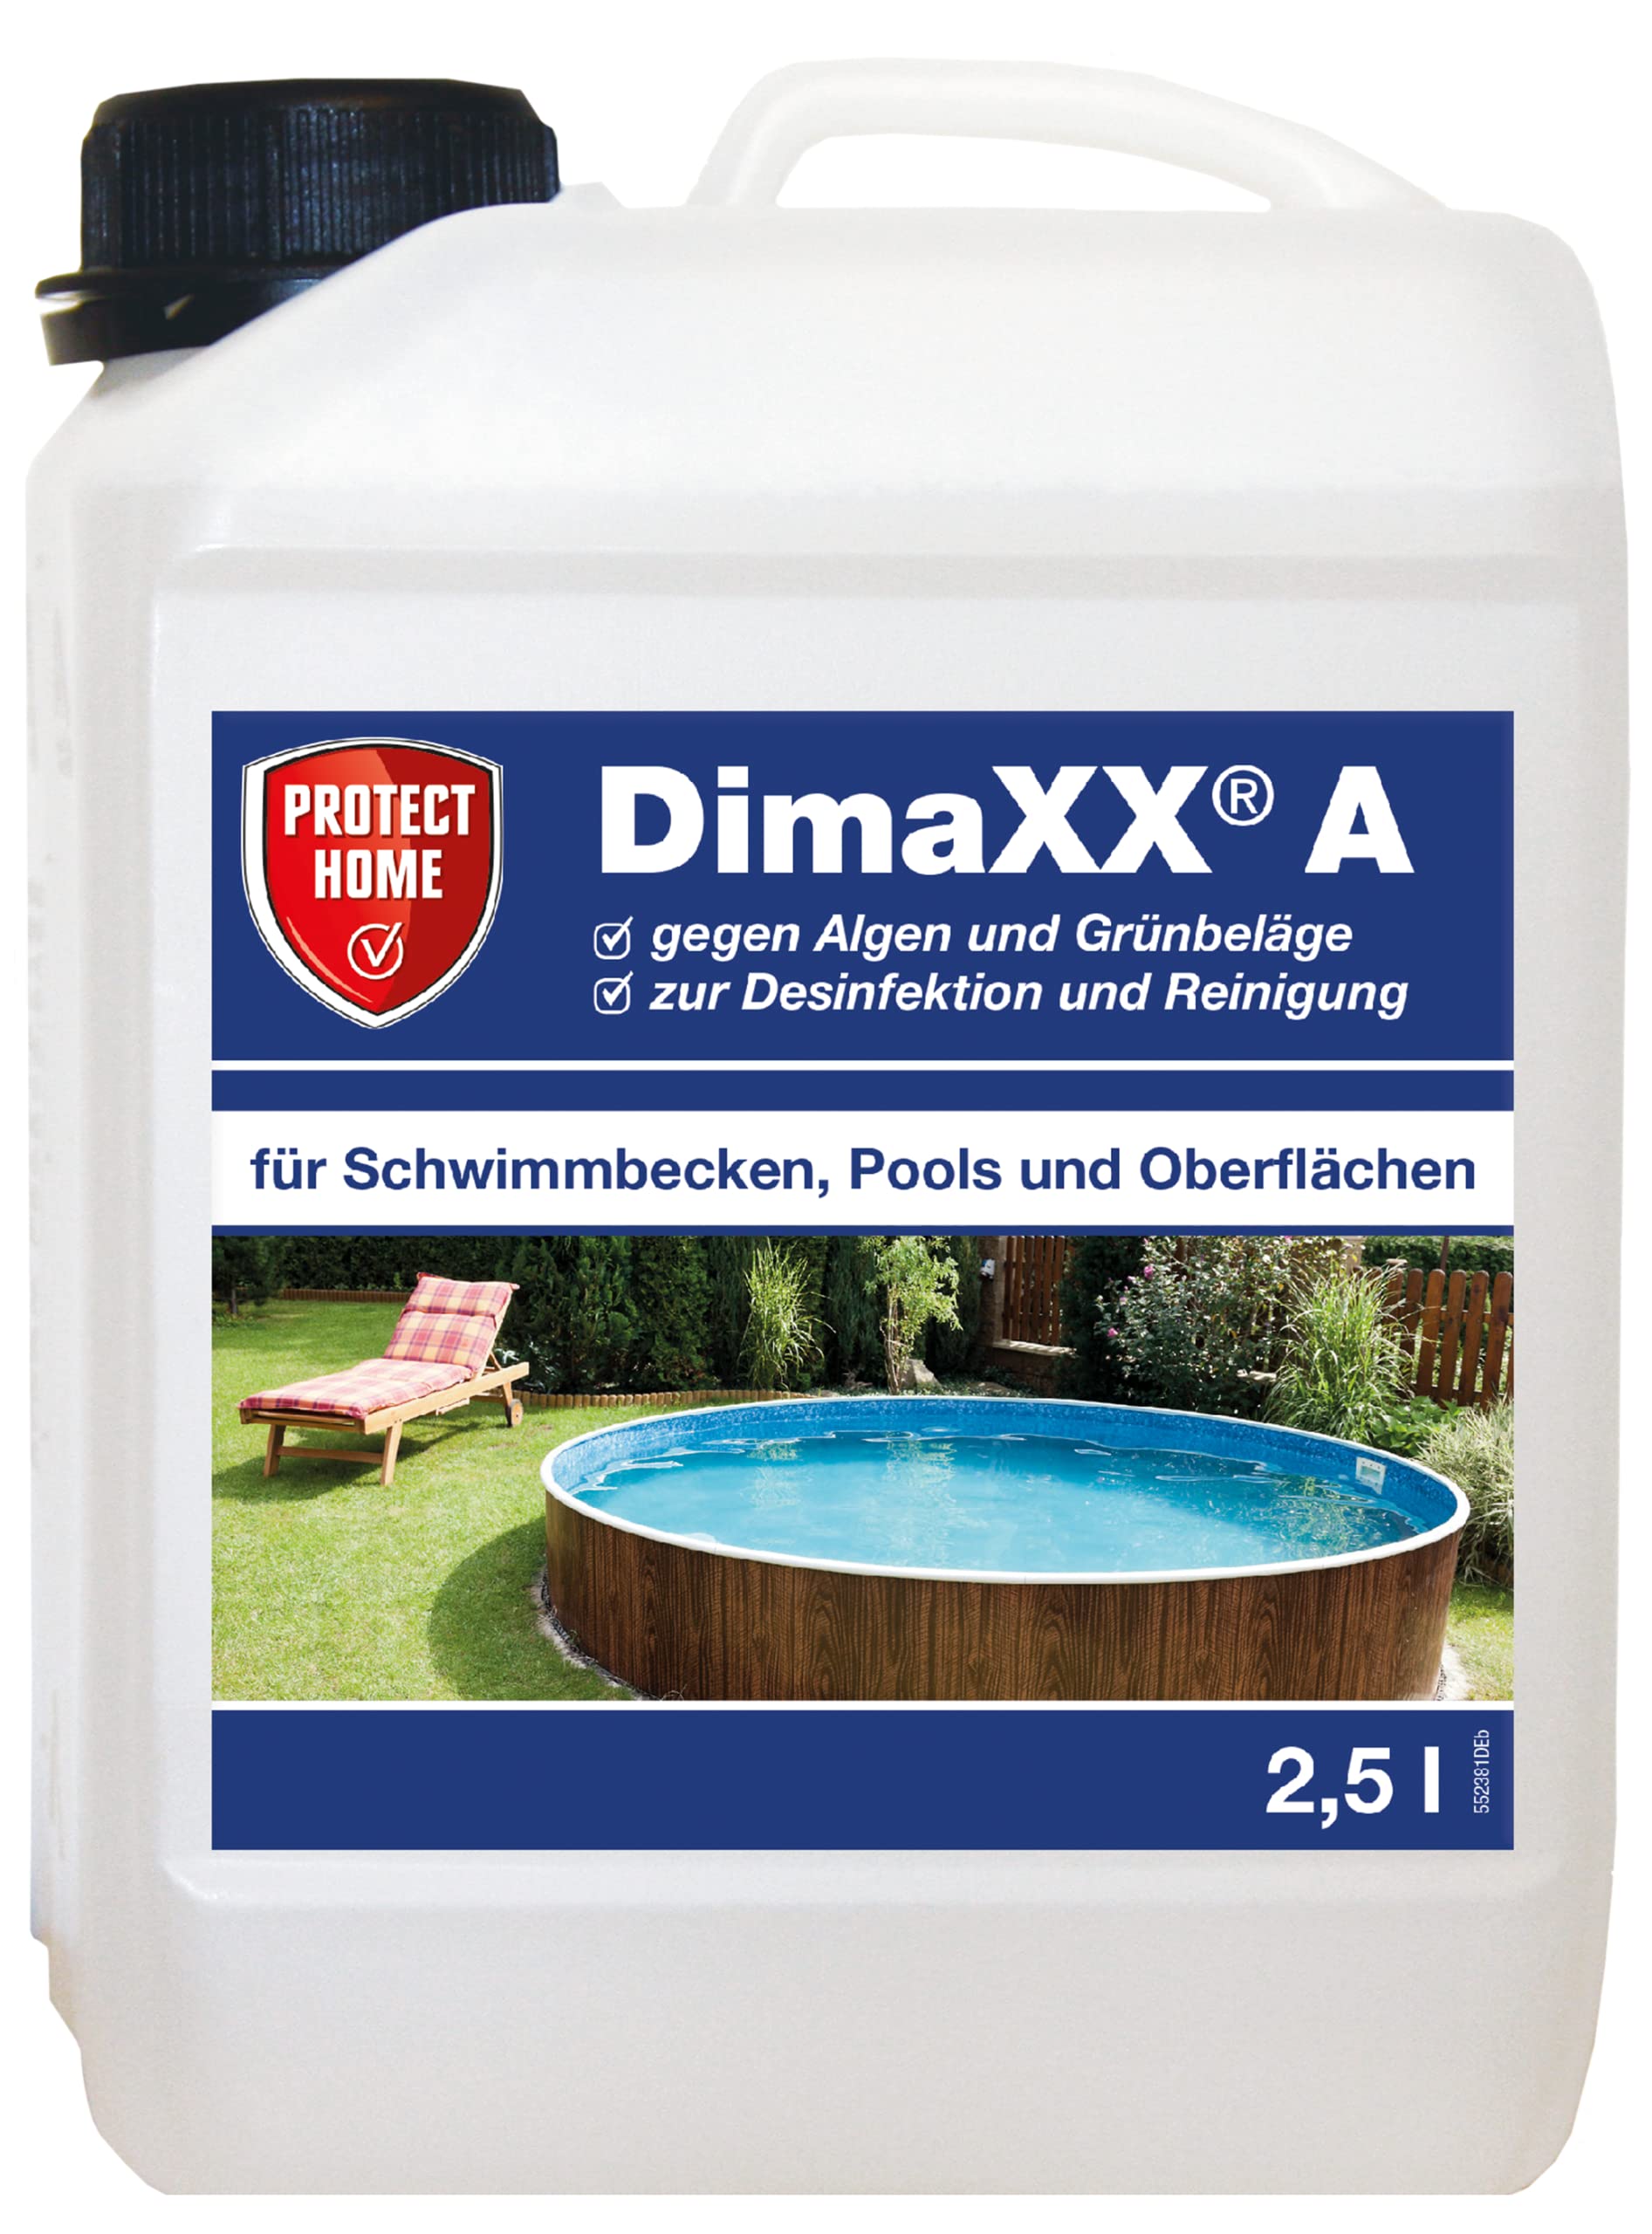 PROTECT HOME Dimaxx A Grünbelag-Entferner, Algenmittel, Poolreiniger gegen Grünbeläge und Algen in Schwimmbad, Pool und Flächen, 2,5 Ltr. Konzentrat